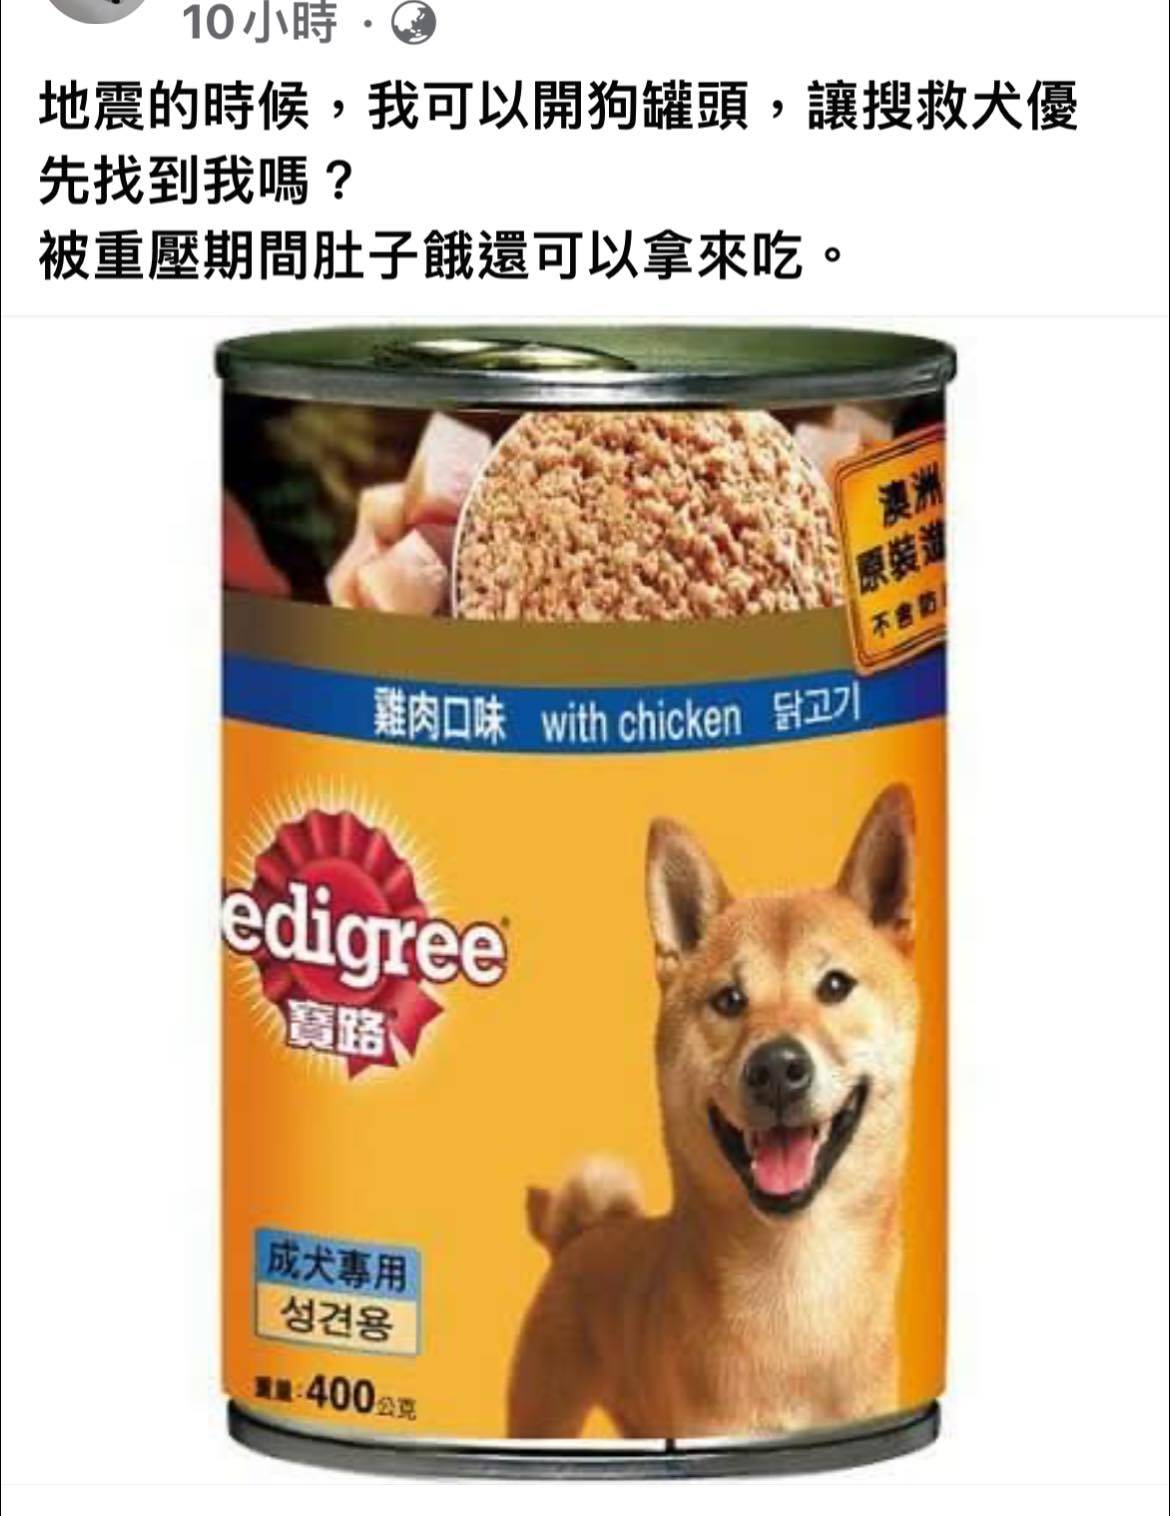 網友好奇「開狗罐頭會讓搜救犬先找到我嗎？」